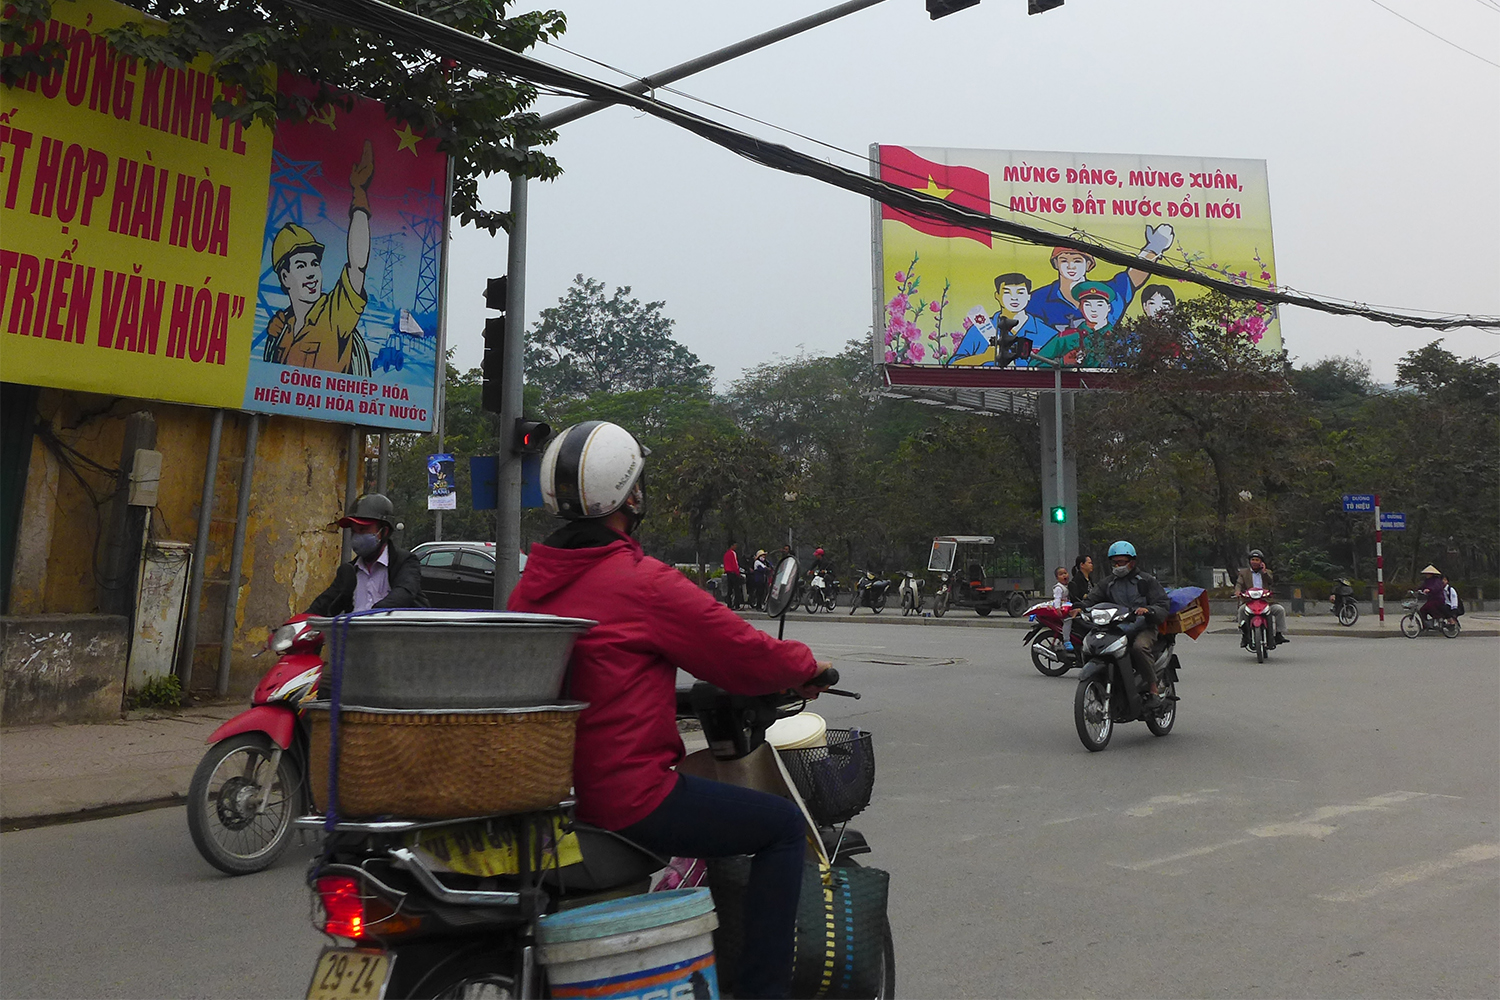 La plupart des Vietnamiens n’ont pas de voiture et se servent de leur scooter pour transporter des marchandises, faire des courses.Voilà pourquoi on voit tant de scooters très chargés !